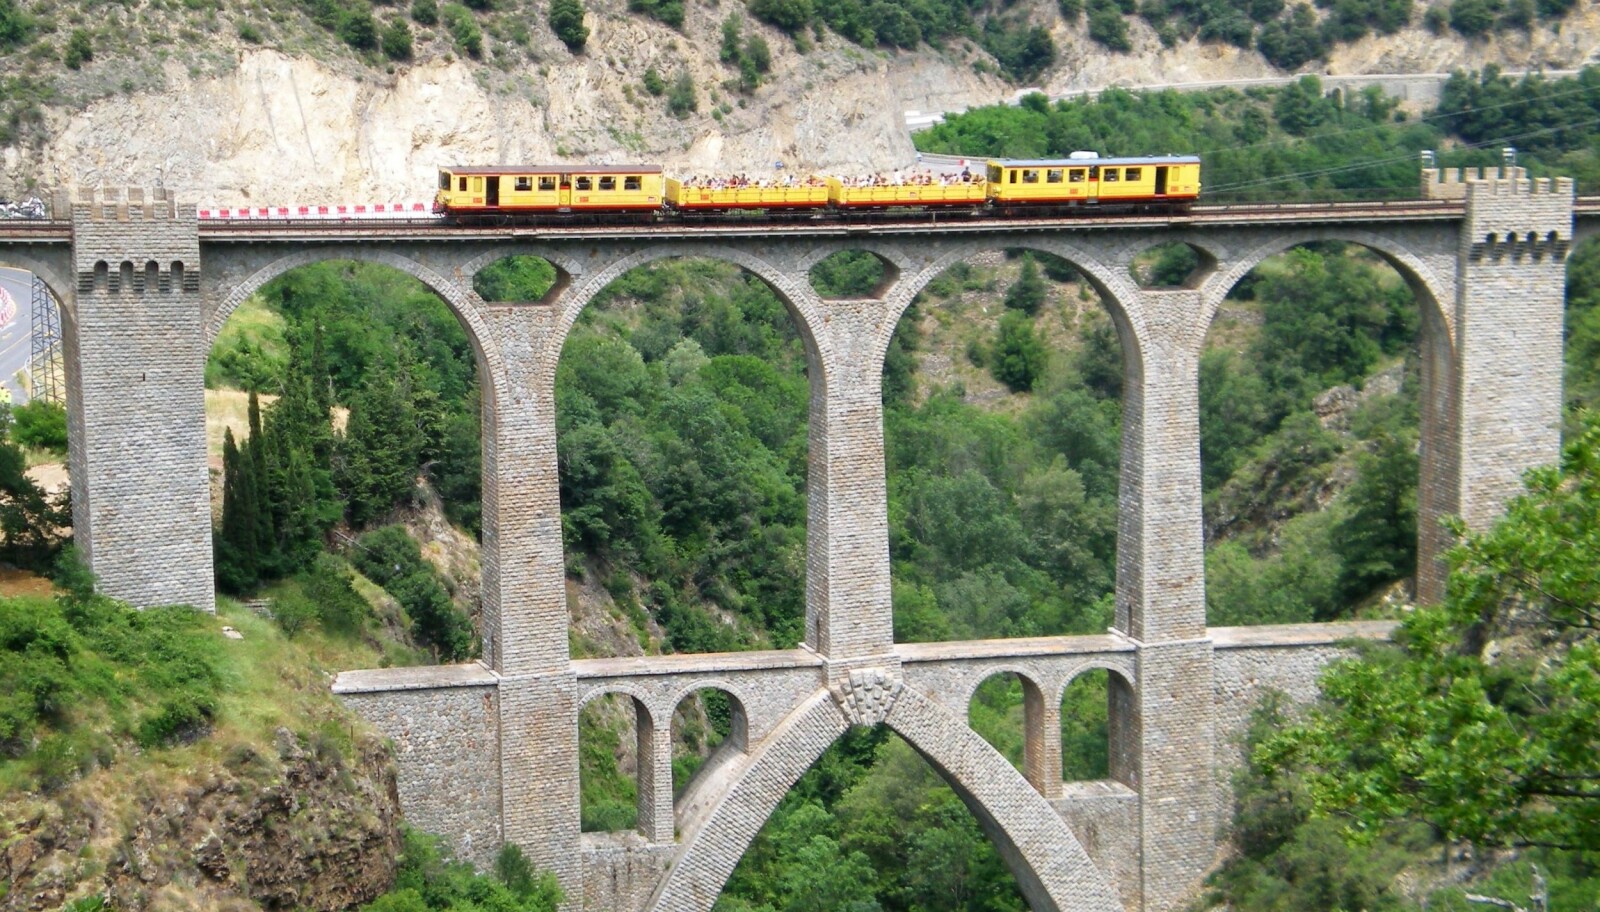 <b>VIADUKT:</b> Séjourné-viadukten er blant de flotteste konstruksjonene på Train Jaune-banen.